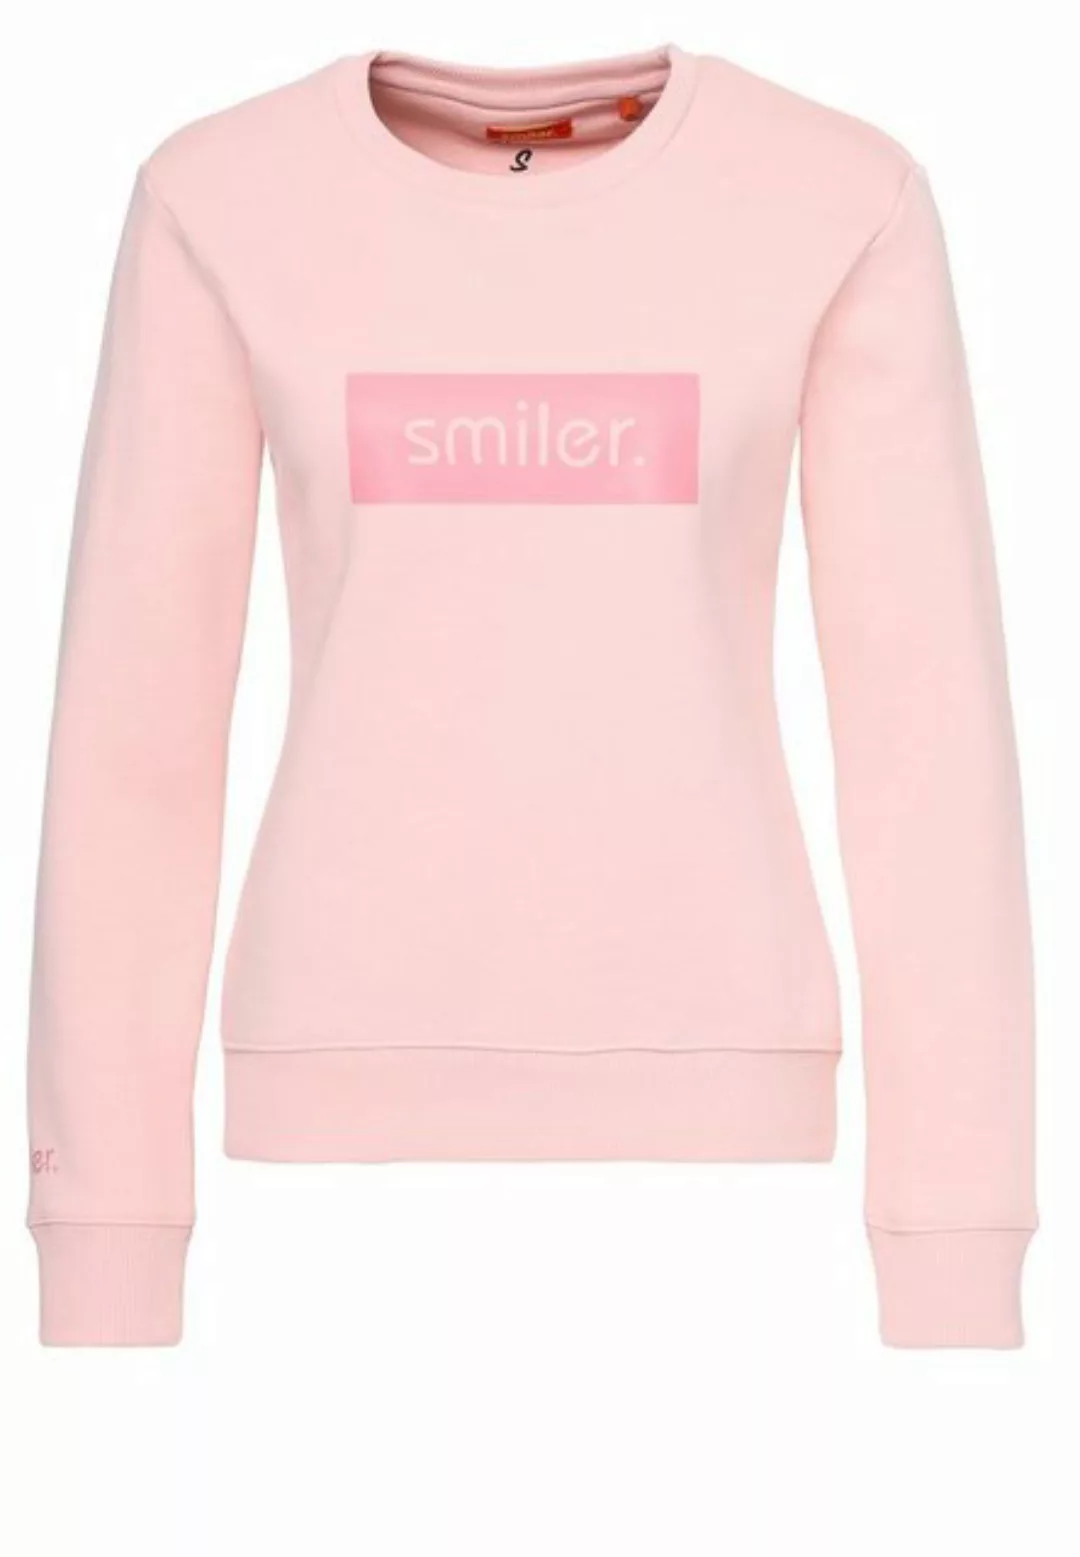 smiler. Sweatshirt Cuddle. mit modernem Design günstig online kaufen